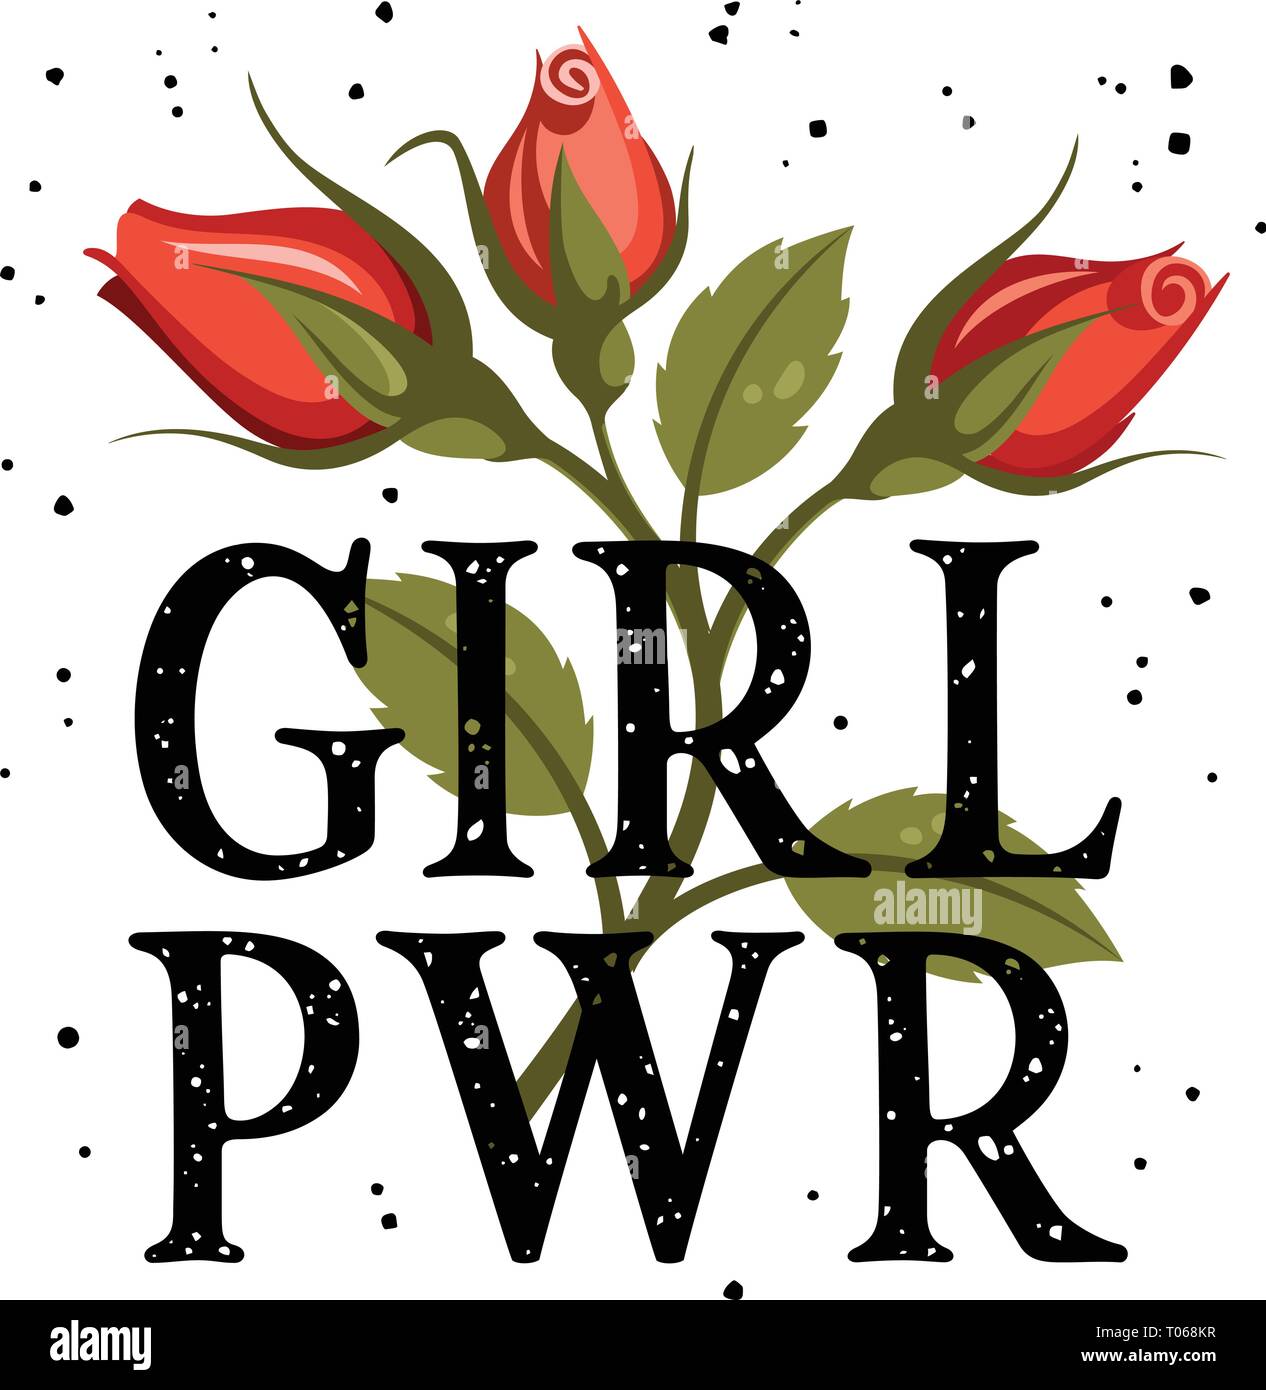 Girl power t-shirt design, slogan typographie avec roses rouges, la broderie patch. Graphic Tee femme. Vecteurs Illustration de Vecteur